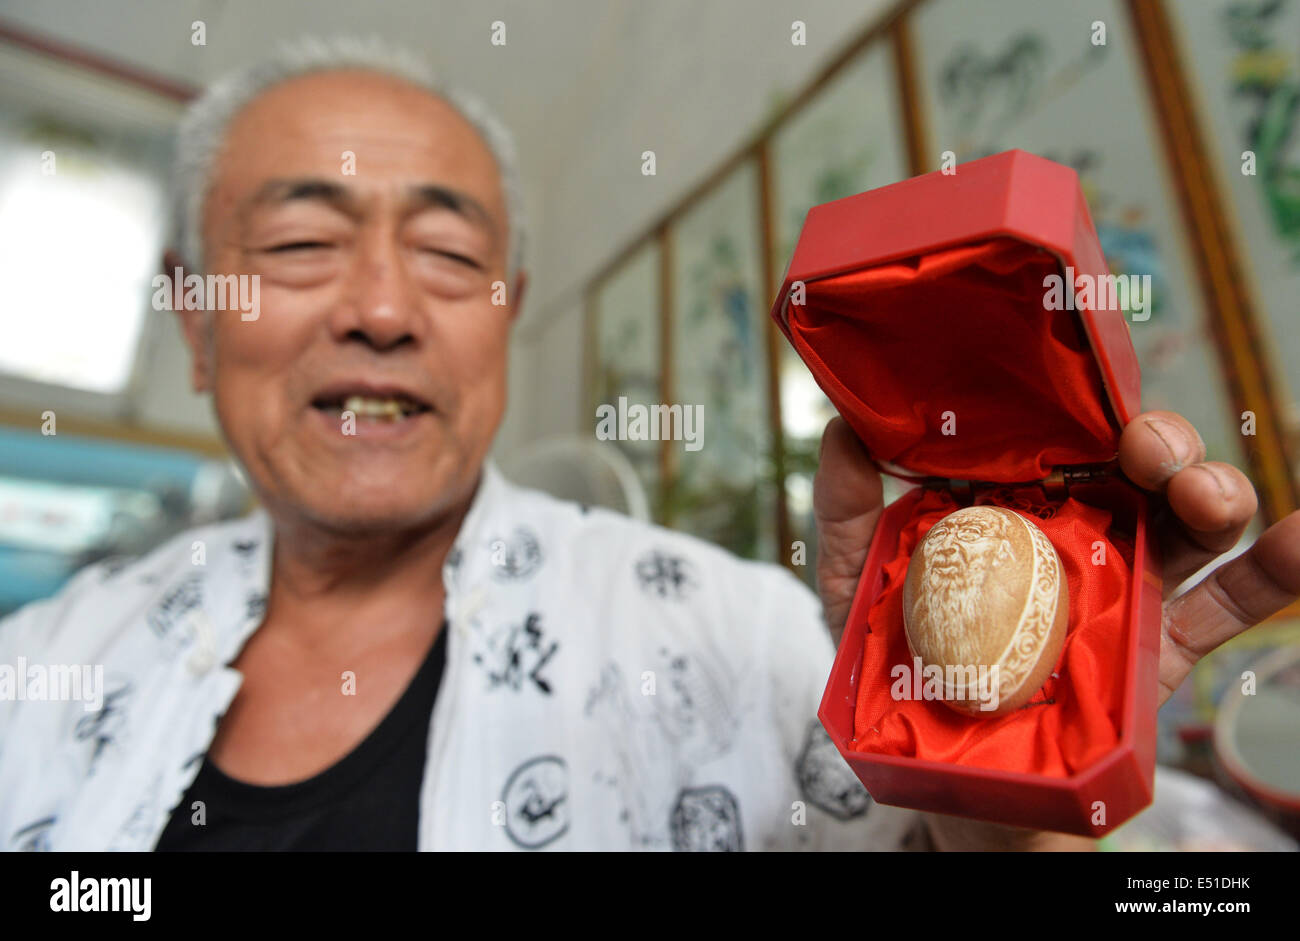 Shijiazhuang, Province de Hebei en Chine. 17 juillet, 2014. Huang Zhankui, un agriculteur de l'Yangjiatun village de Tangshan city, montre son premier œuf de l'artisanat de sculpture, portrait de l'artiste contemporain chinois Qi Baishi, à Tangshan, Province de Hebei en Chine du nord, le 17 juillet 2014. Huang, 70 ans, a étudié la sculpture d'oeufs pendant 10 ans dans ses loisirs. © Ascott Li/Xinhua/Alamy Live News Banque D'Images